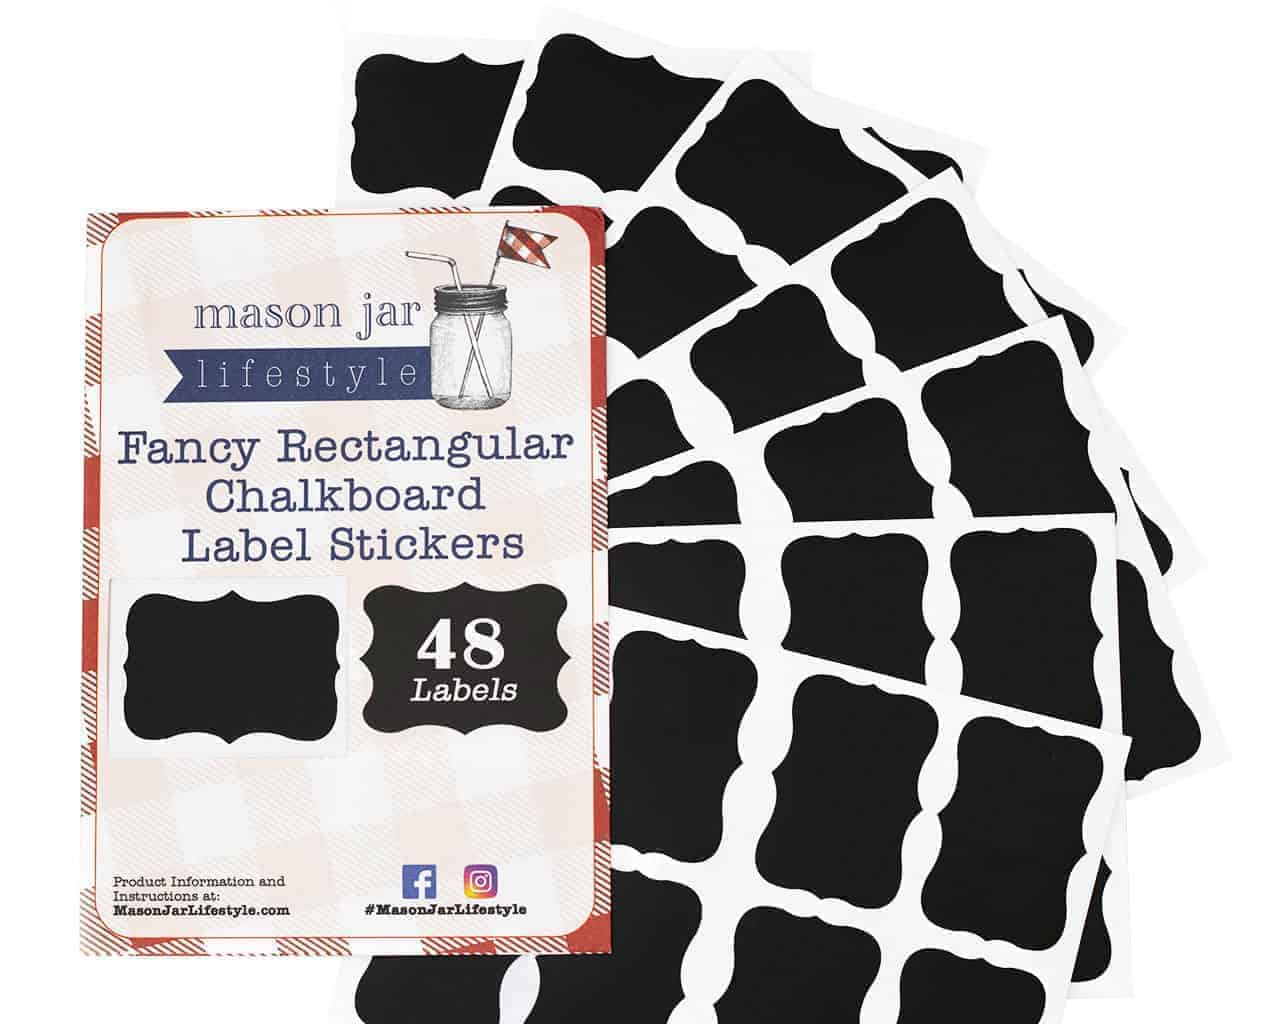 Vinyl Chalkboard Labels Stickers 48 Pack Fancy Rectangle